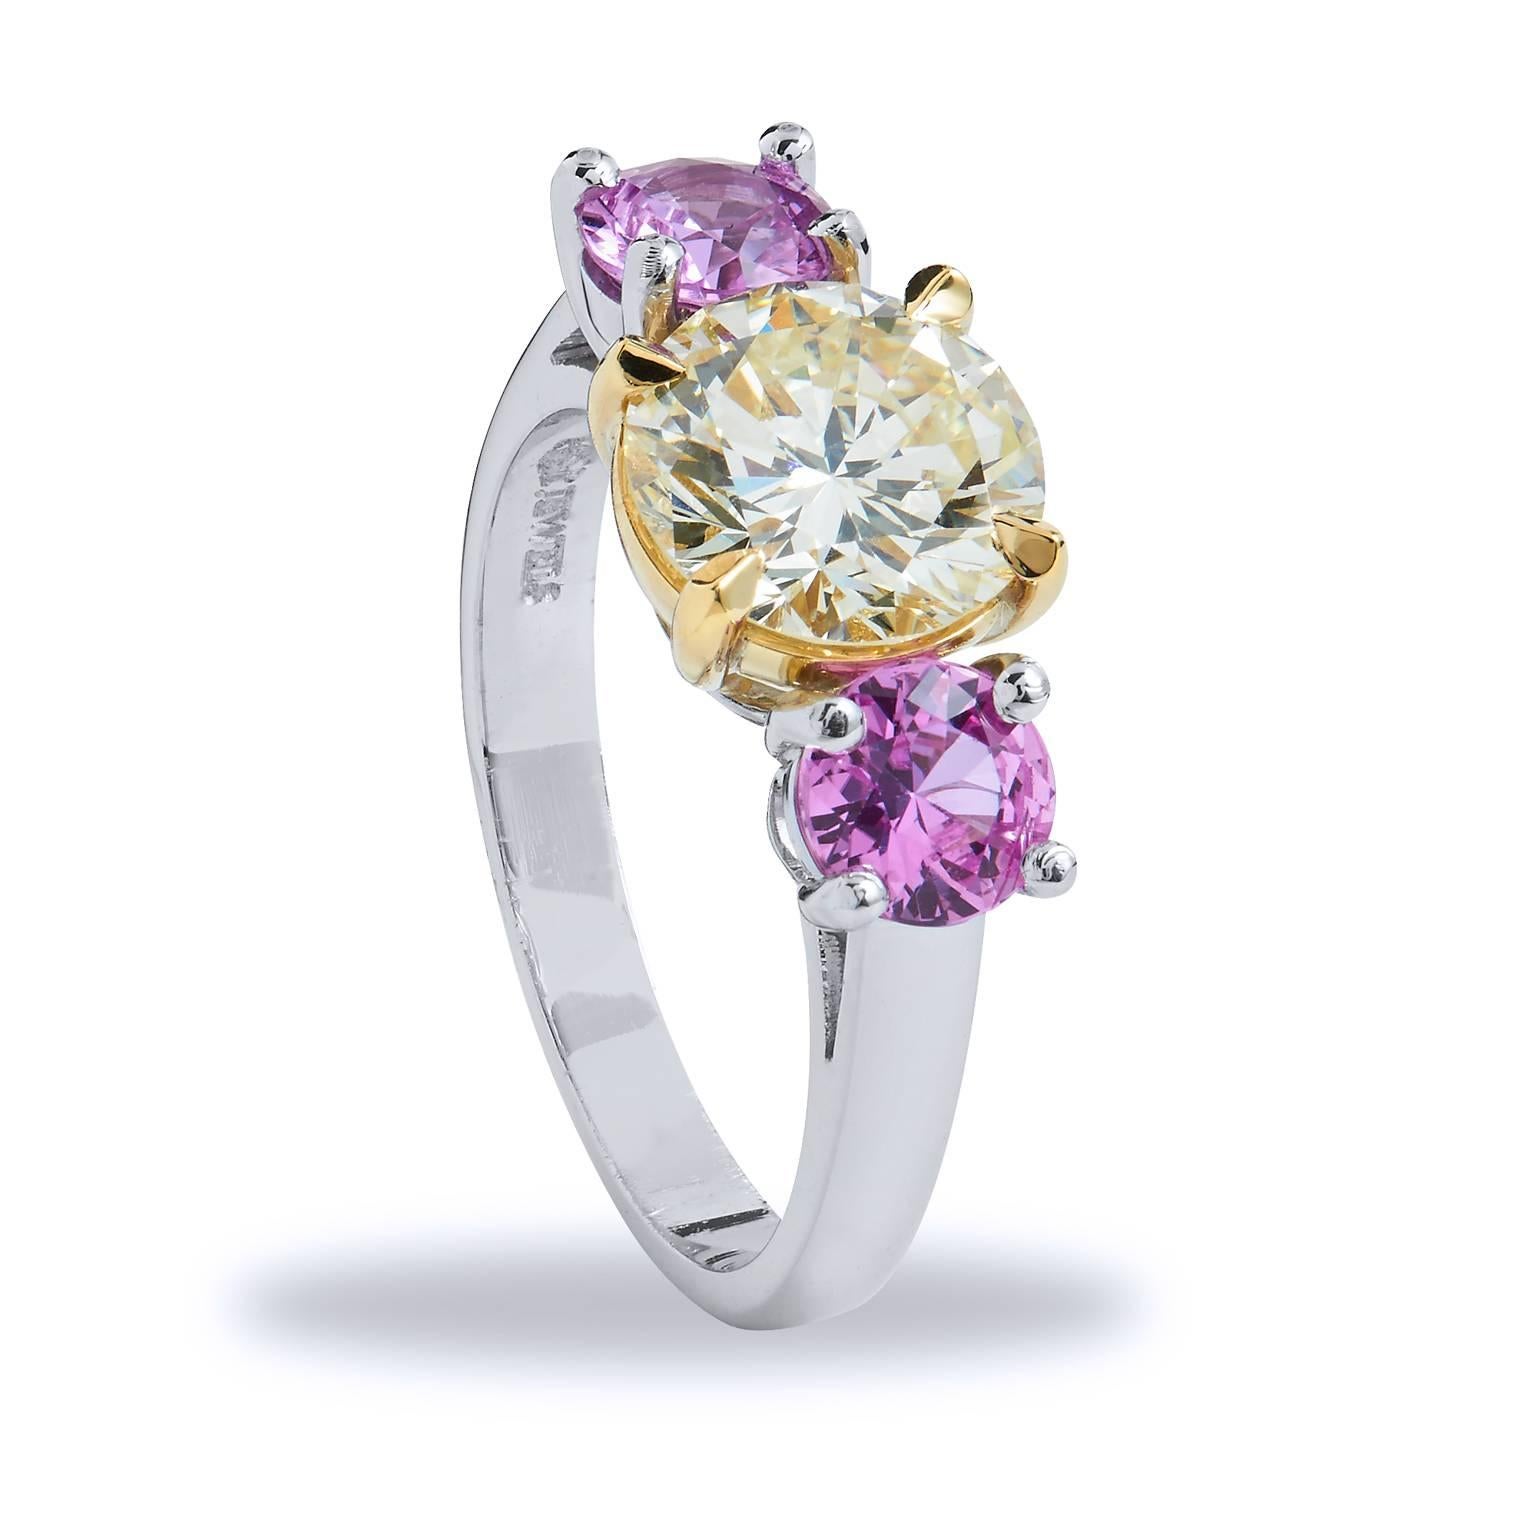 GIA zertifiziert  1,81 Karat Drei Stein Rosa Saphir Diamant Gold Platin Ring 

Mit zwei strahlenden rosa Saphiren mit einem Gewicht von 1,09 Karat, die einen wunderschönen GIA-zertifizierten 1,81-Karäter umarmen, werden die Sinne an die blühenden